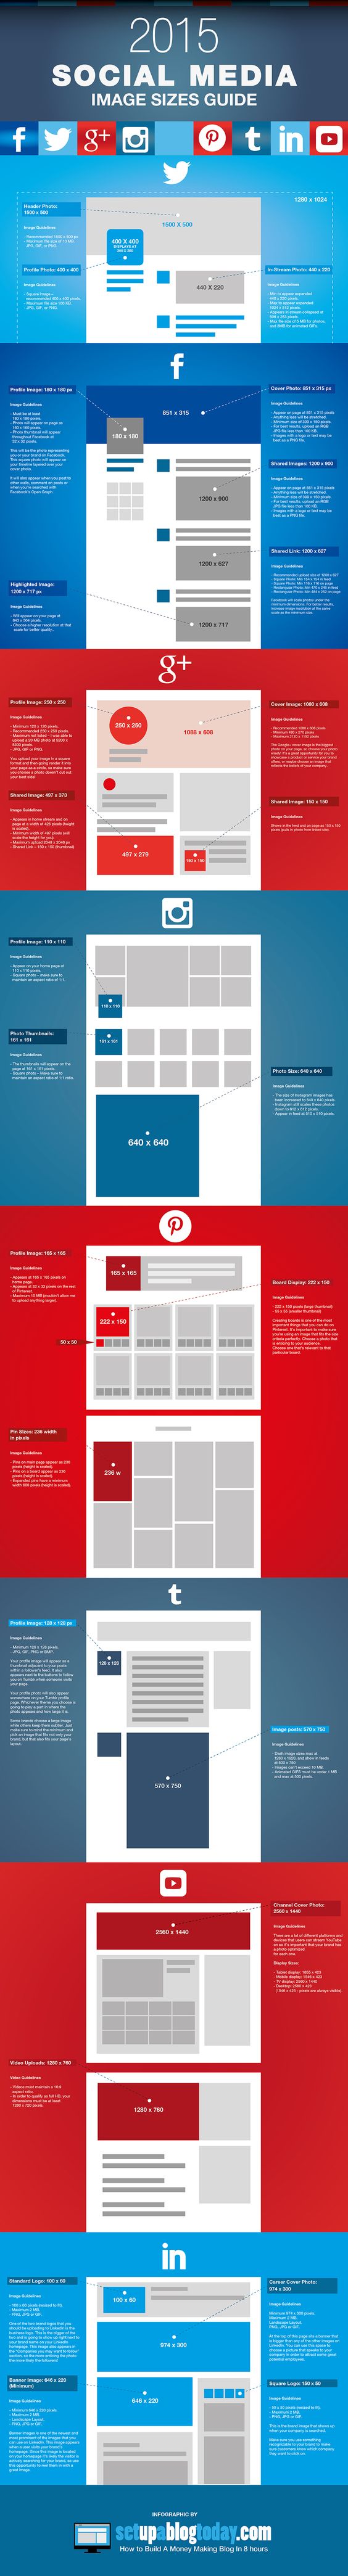 Social Media Image Sizes Guide 2015 - #SocialMedia #SocialNetworks #Infographic #Infographics #Twitter #FB #Facebook #GooglePlus #Instagram #Pinterest #tumblr #LinkedIn #YouTube